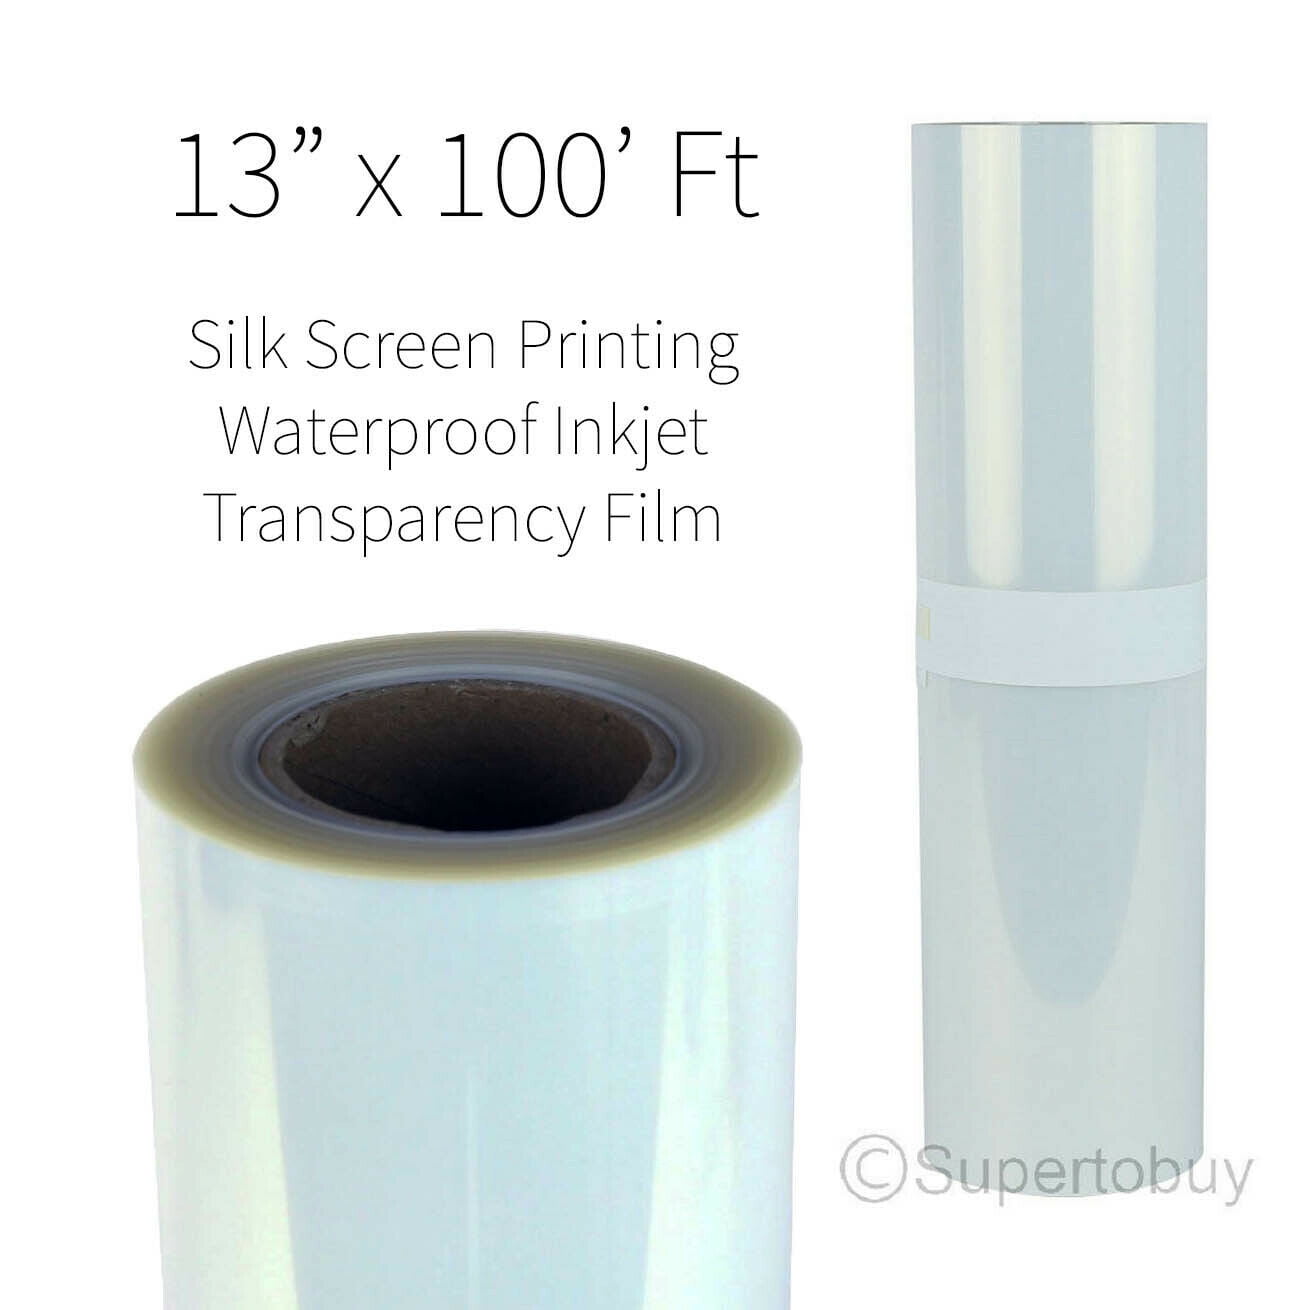 Waterproof Inkjet Transparency Film 17" x 100' /roll 4mil 